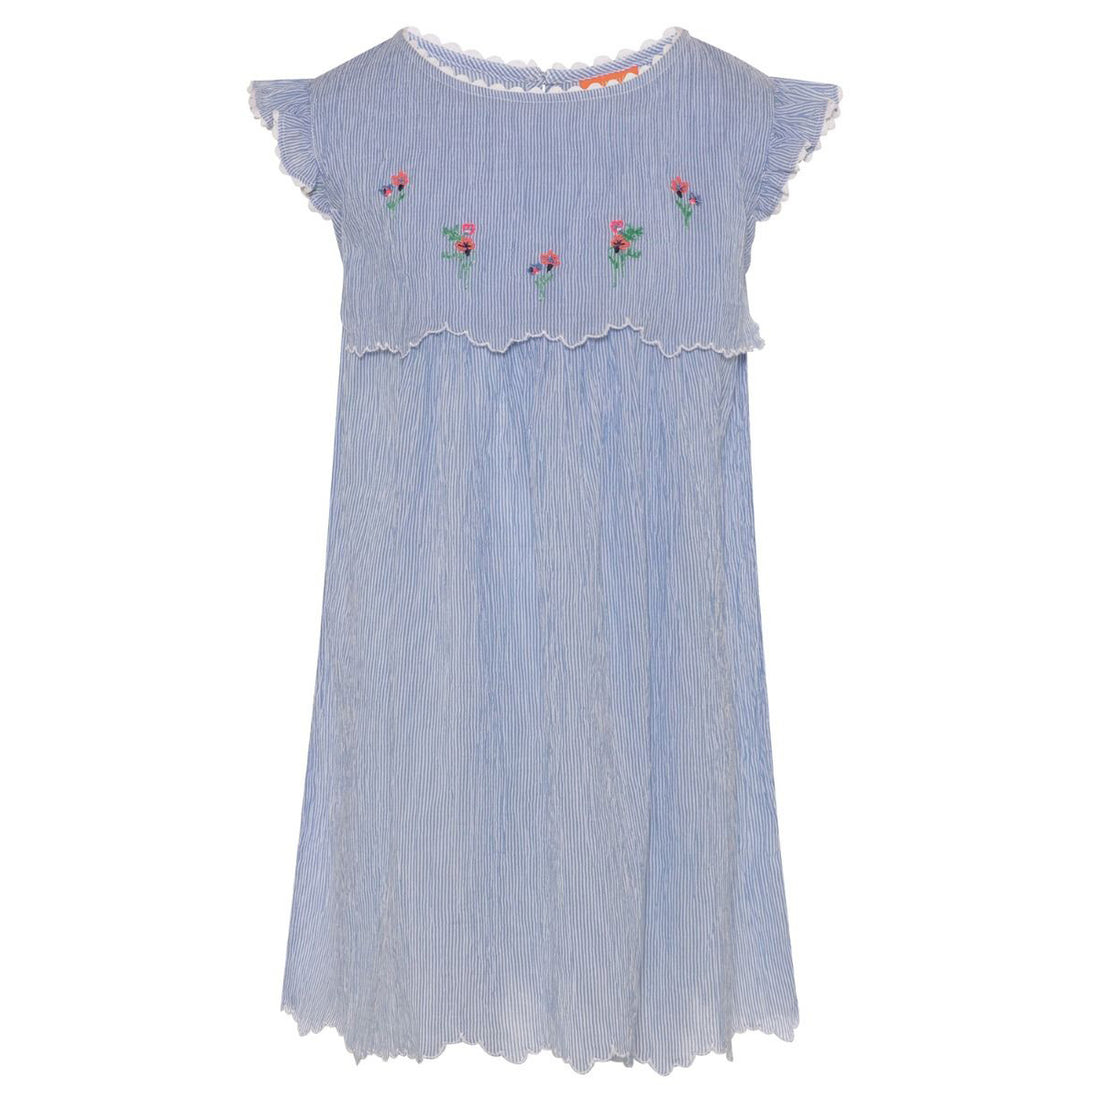 sunuva-girls-handkerchief-dress-blue-white- (1)